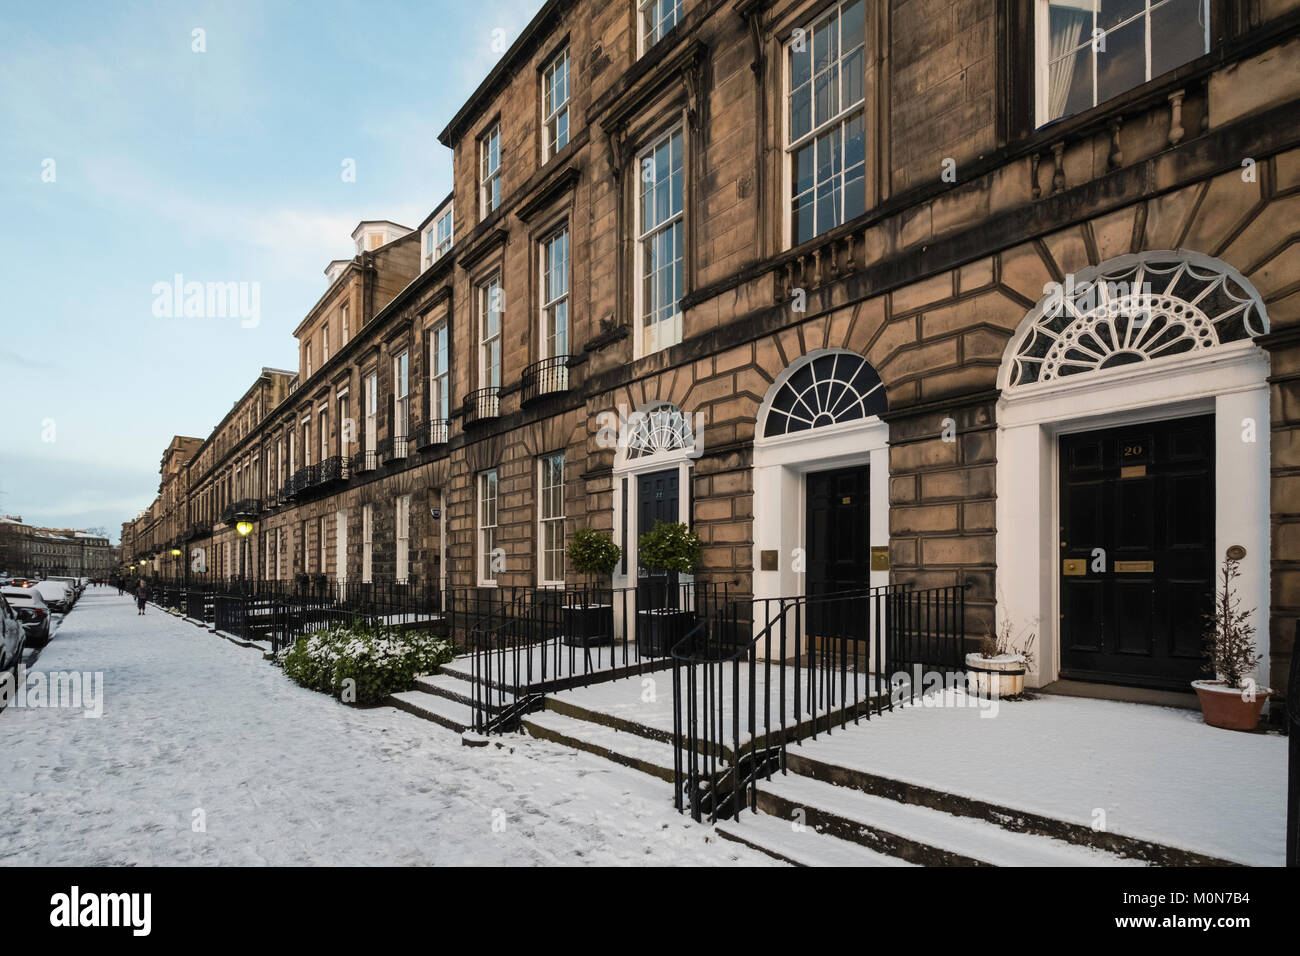 Vue de la rue Heriot Row en hiver avec la neige couvrant dans la nouvelle ville d'Edimbourg, Ecosse, Royaume-Uni Banque D'Images